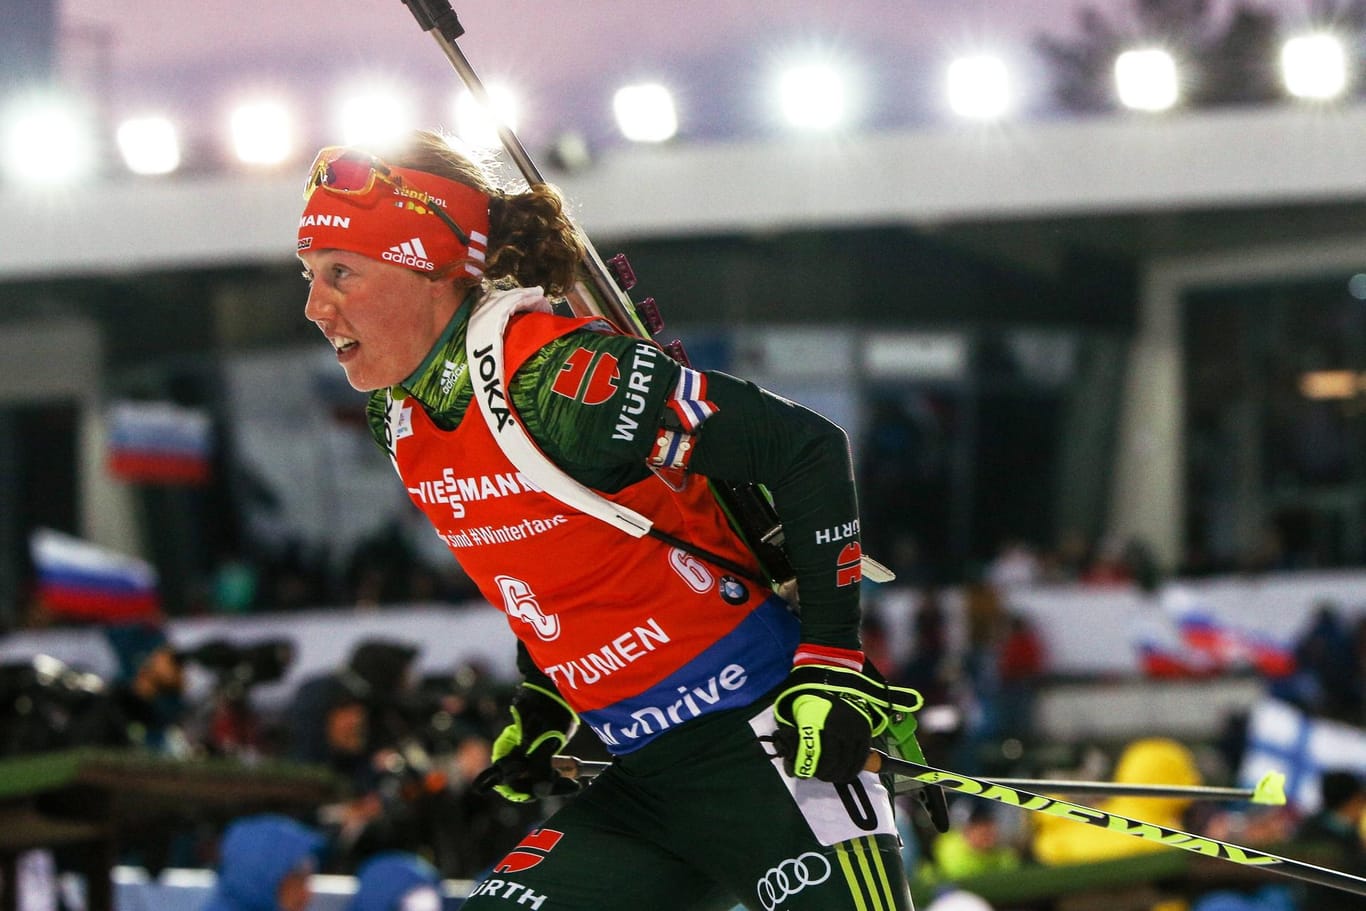 Saison-Finale: Laura Dahlmeier verpasste beim Massenstart im russischen Tyumen ihren 20. Weltcupsieg.